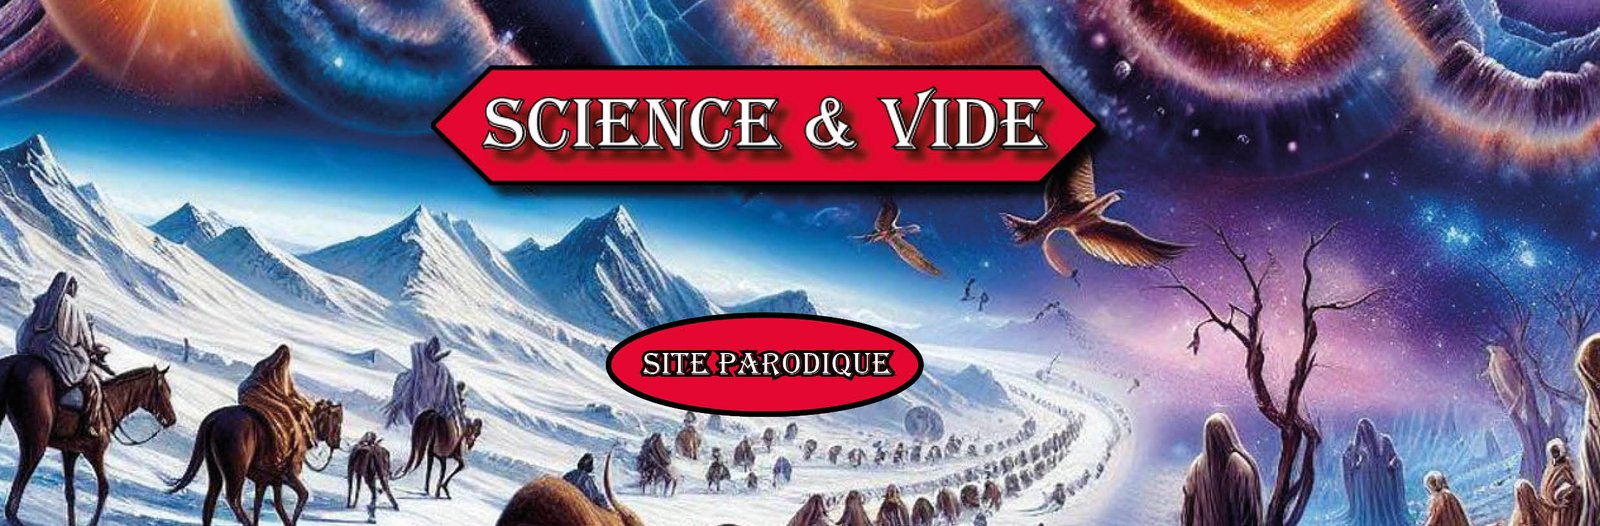 Science et Vide, bandeau d'accueil www.scienceetvide.fr